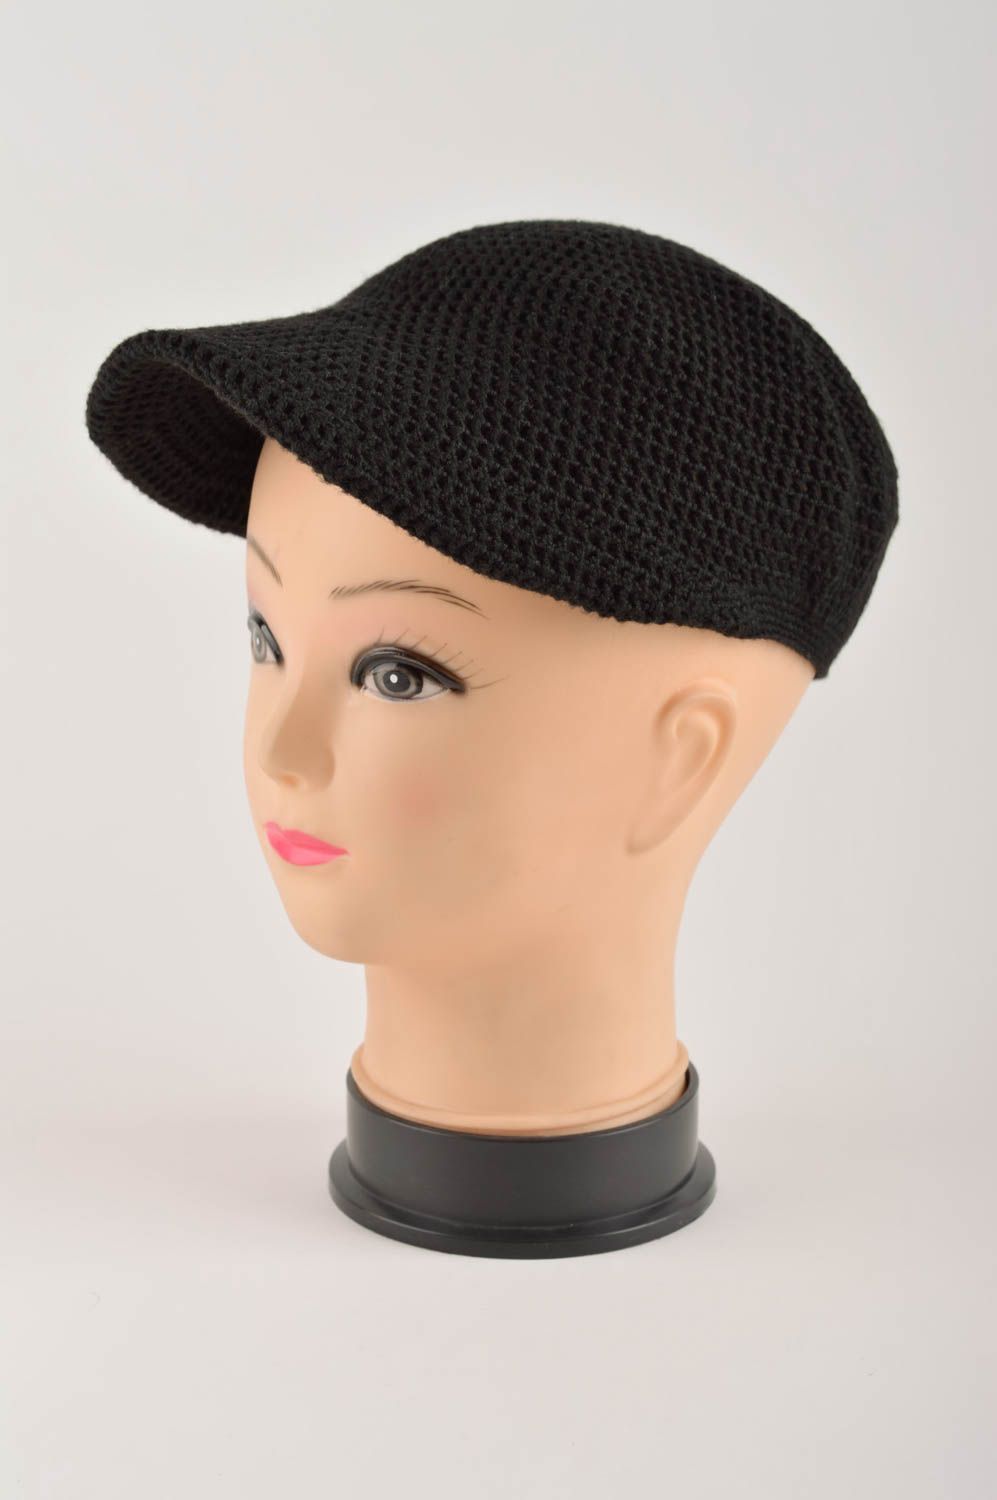 Вязаная кепка ручной работы вязаная шапка черная стильная зимняя шапка фото 2